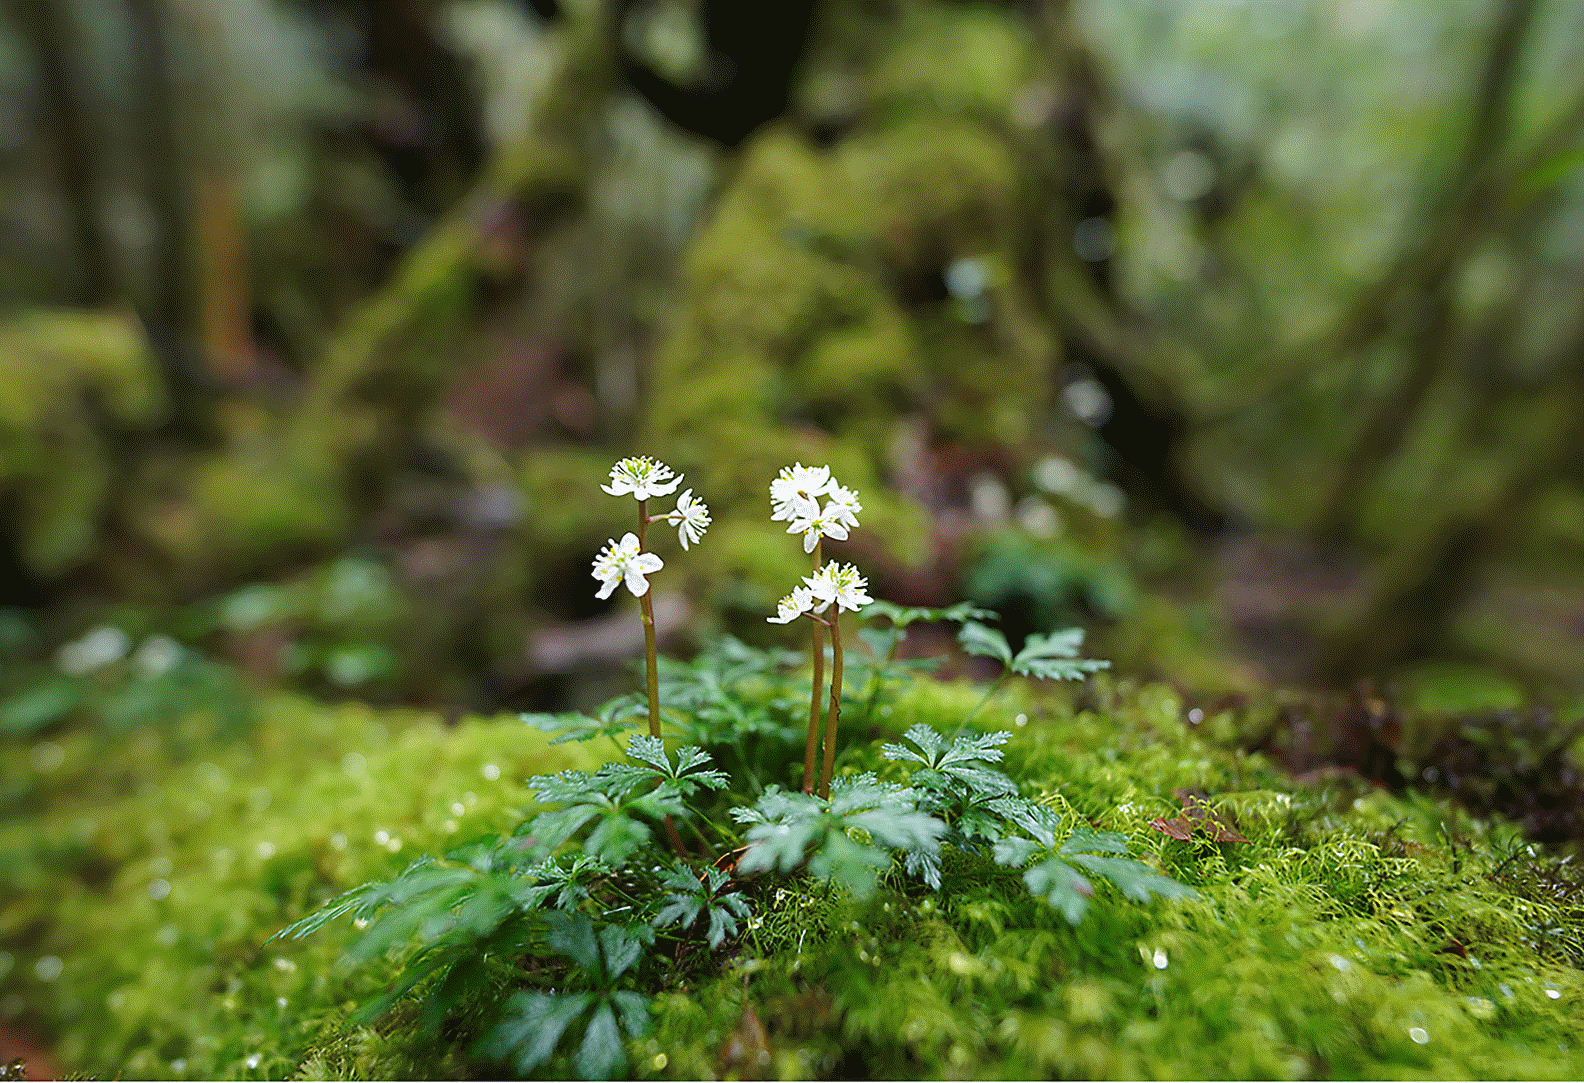 Billede af en lille blomst på en klippe i skoven – i fokus med et stort slør foran og bagved